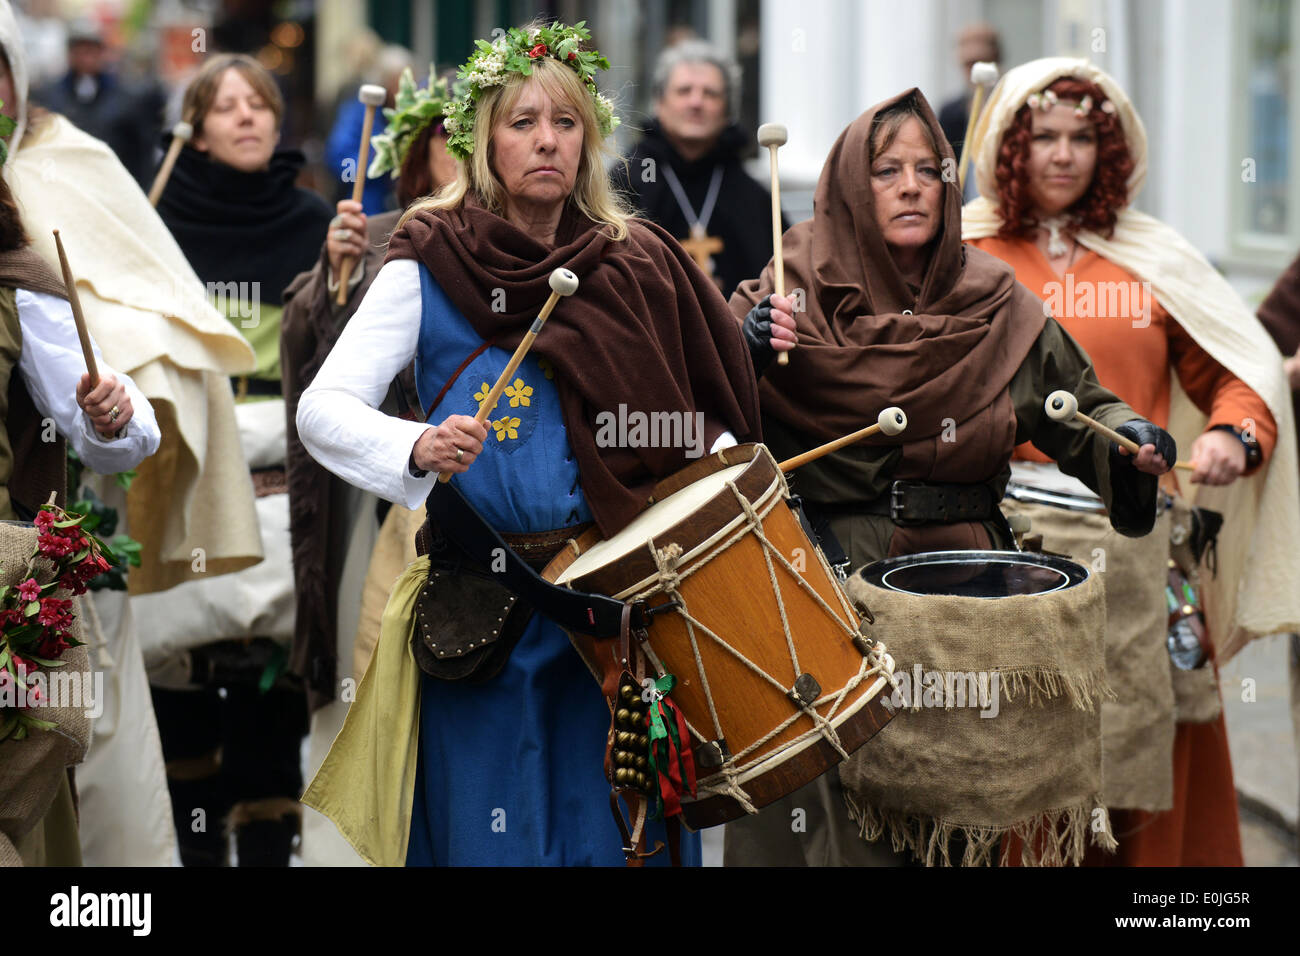 Un gruppo di persone vestite con costumi e celebra la battaglia di Lewes di Lewes High Street, East Sussex, Regno Unito. Foto Stock